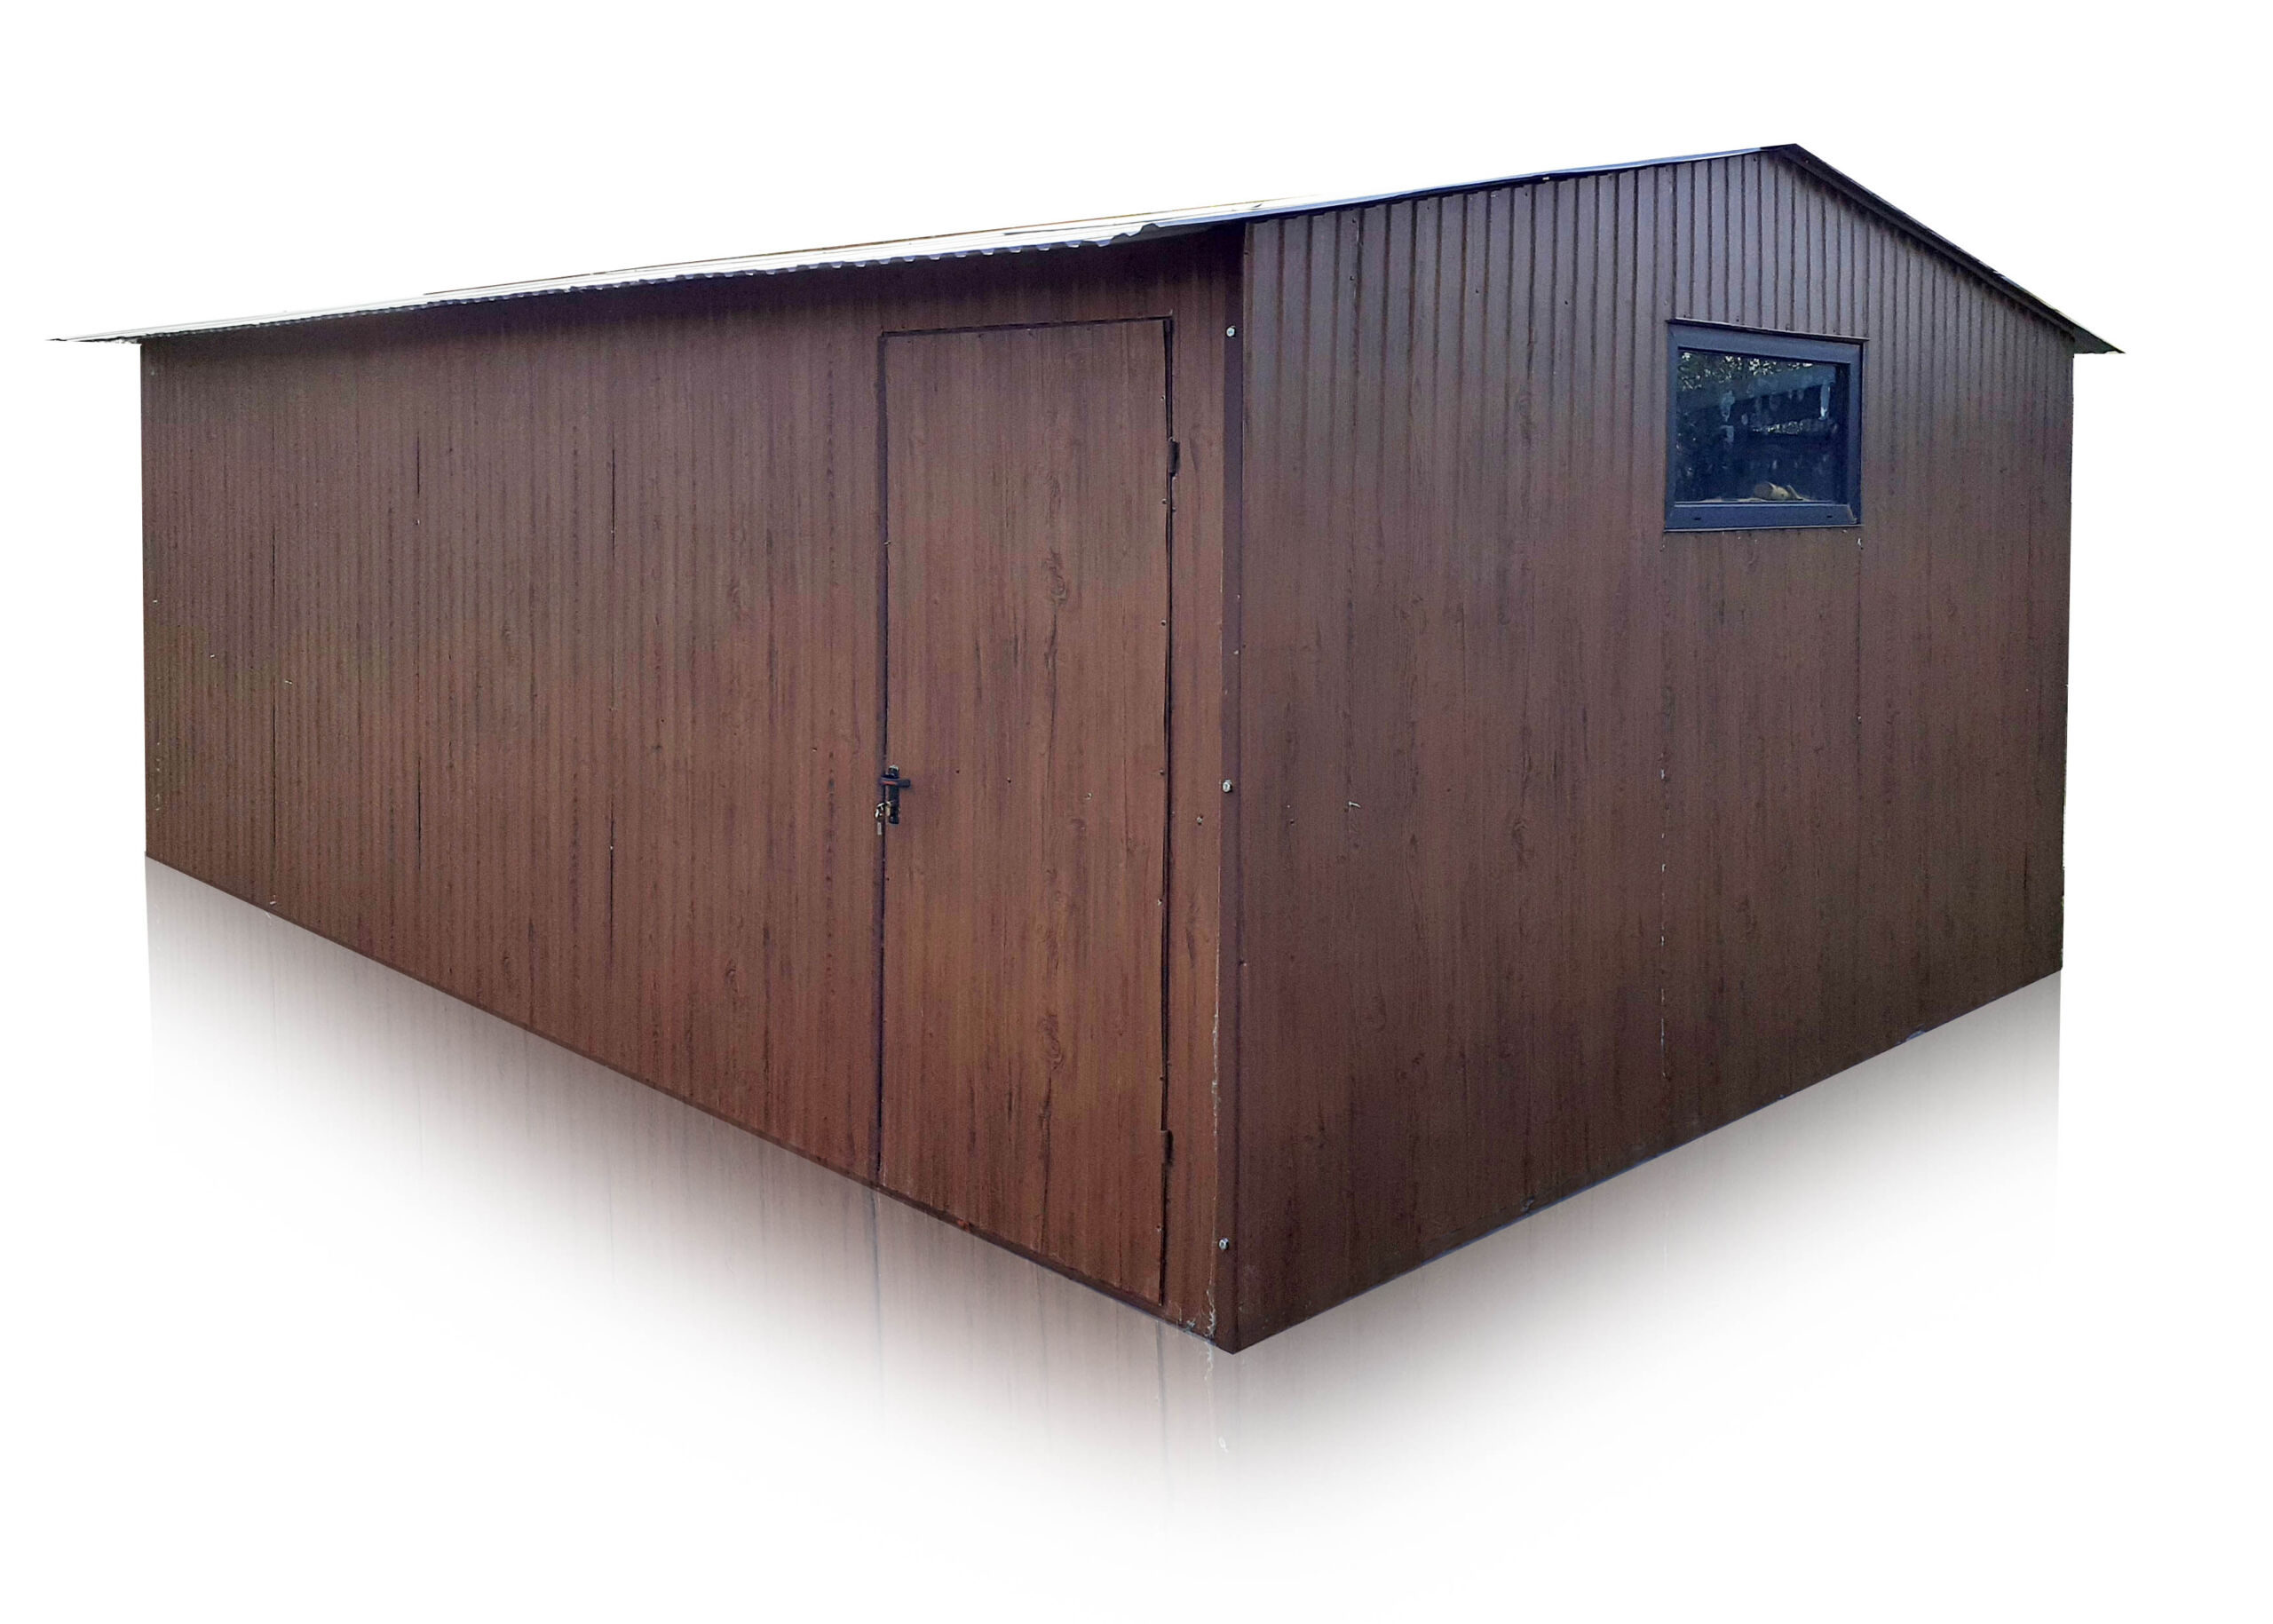 Plechový garáž 4x5 so sedlovou strechou vo farbe Orech Mat